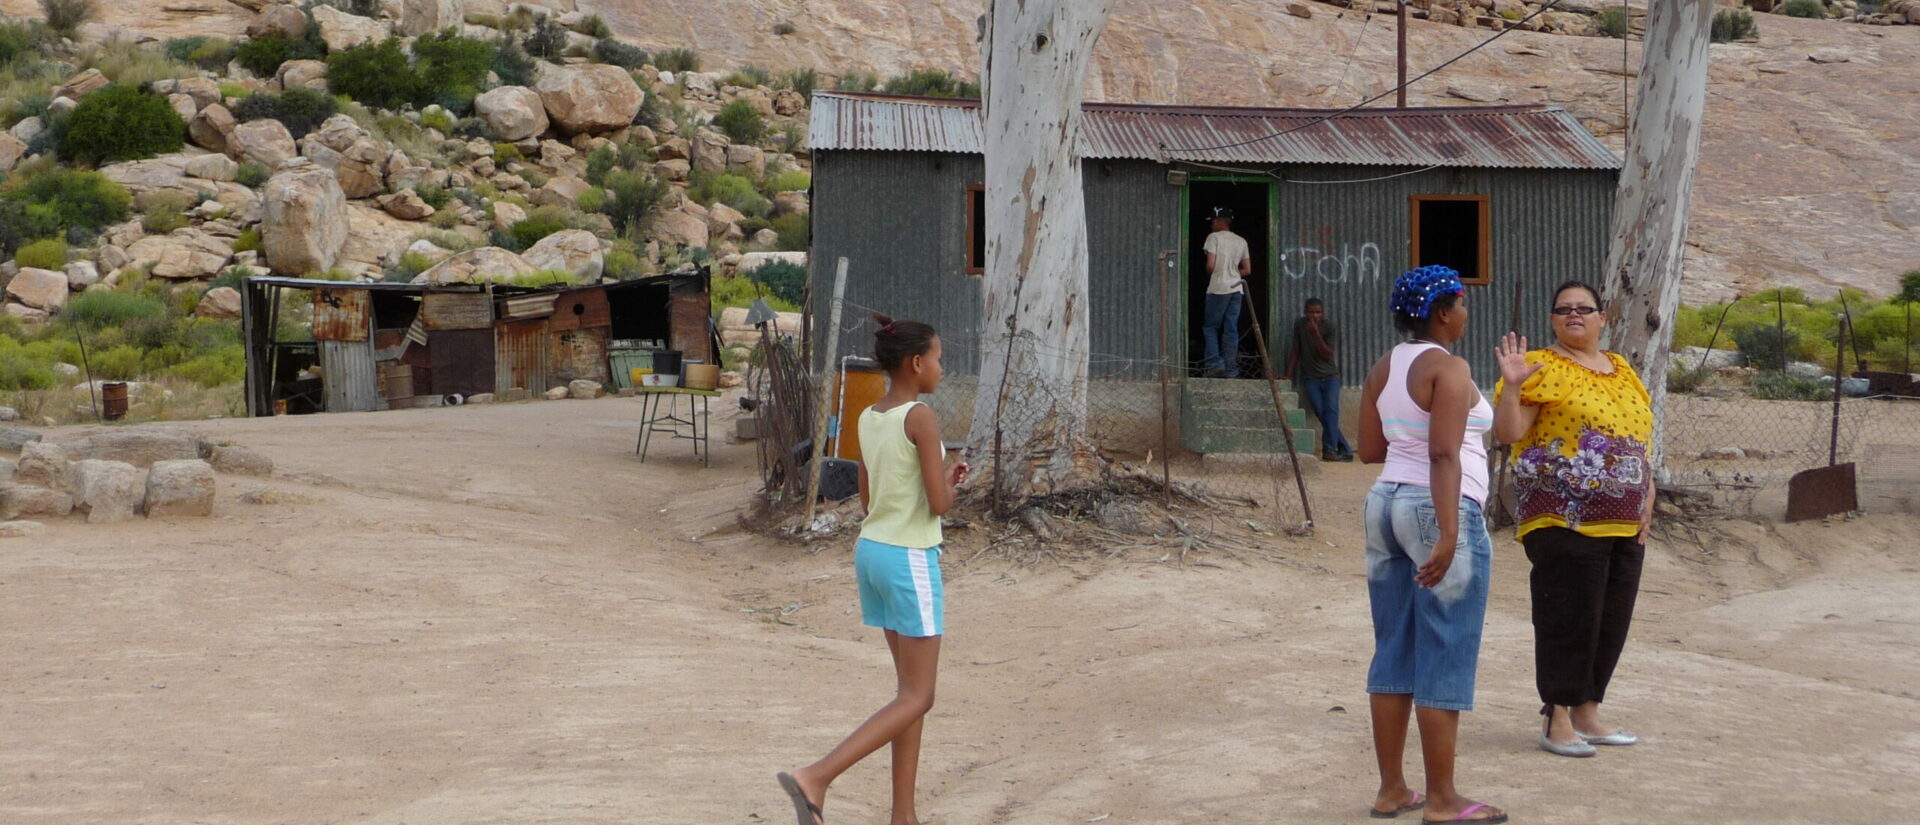 Le Namaqualand est l'une des régions les plus pauvres d'Afrique du Sud | © Claudia Führer/Action de Carême